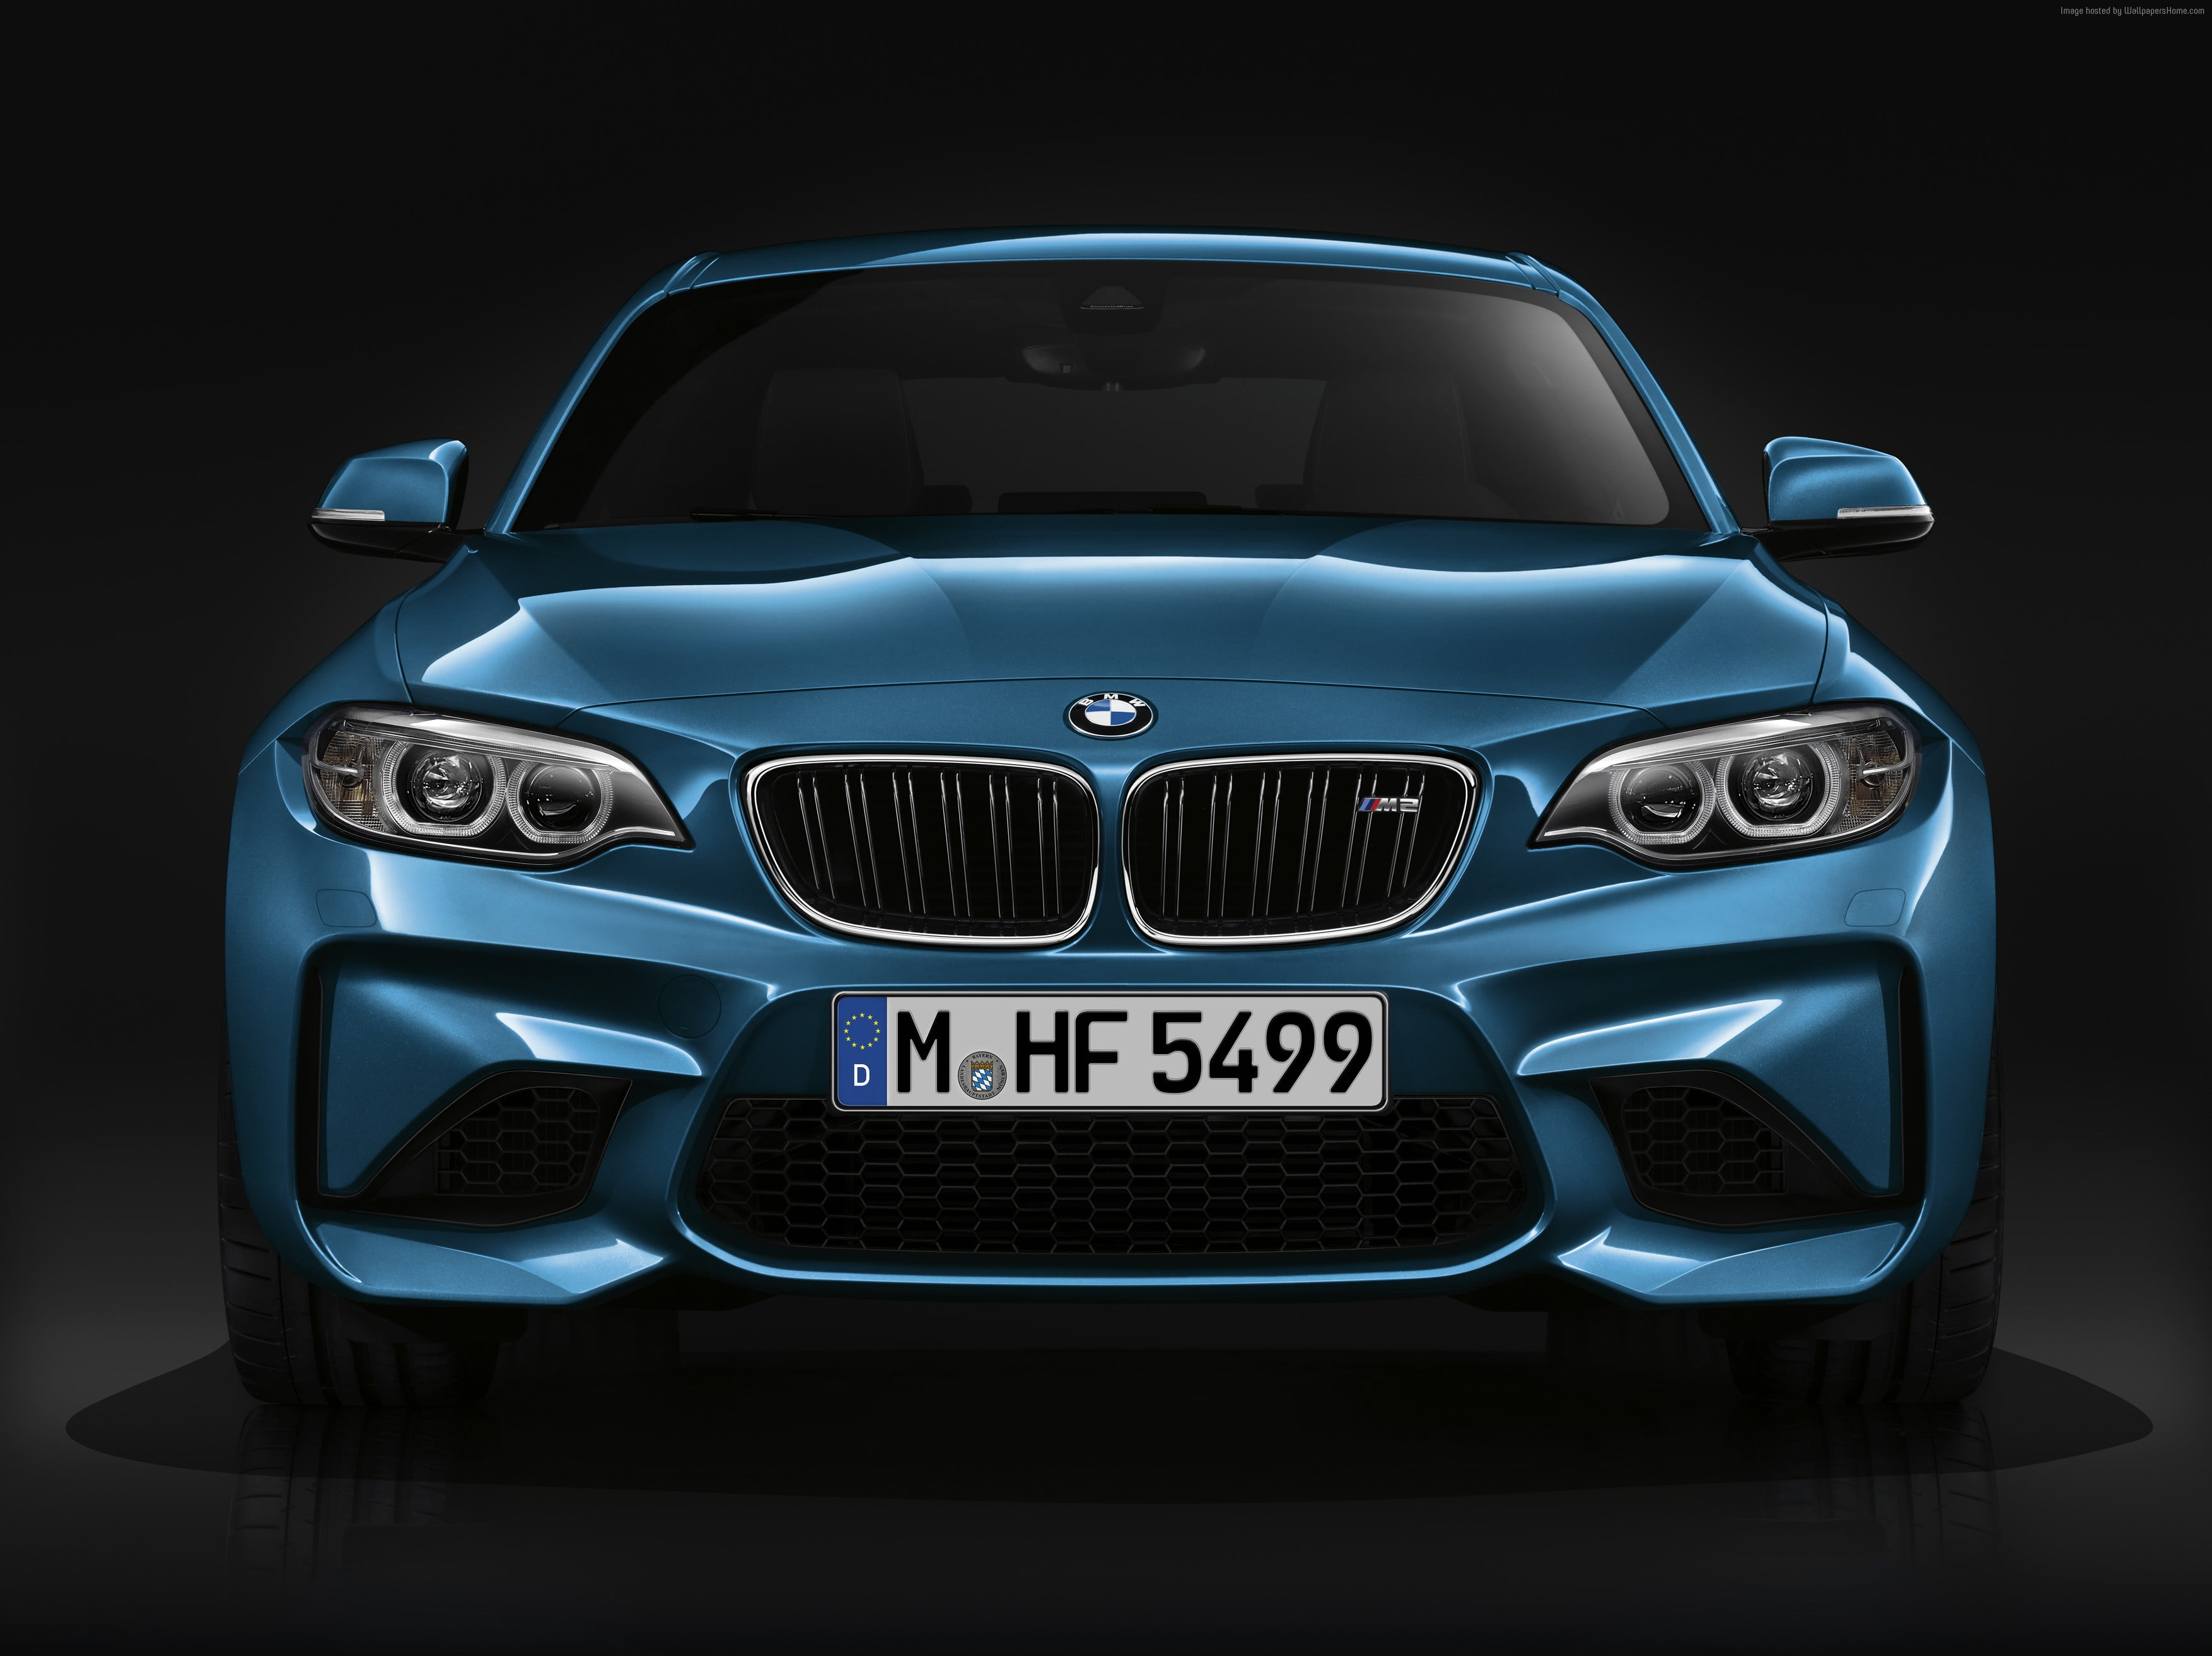 blue BMW car